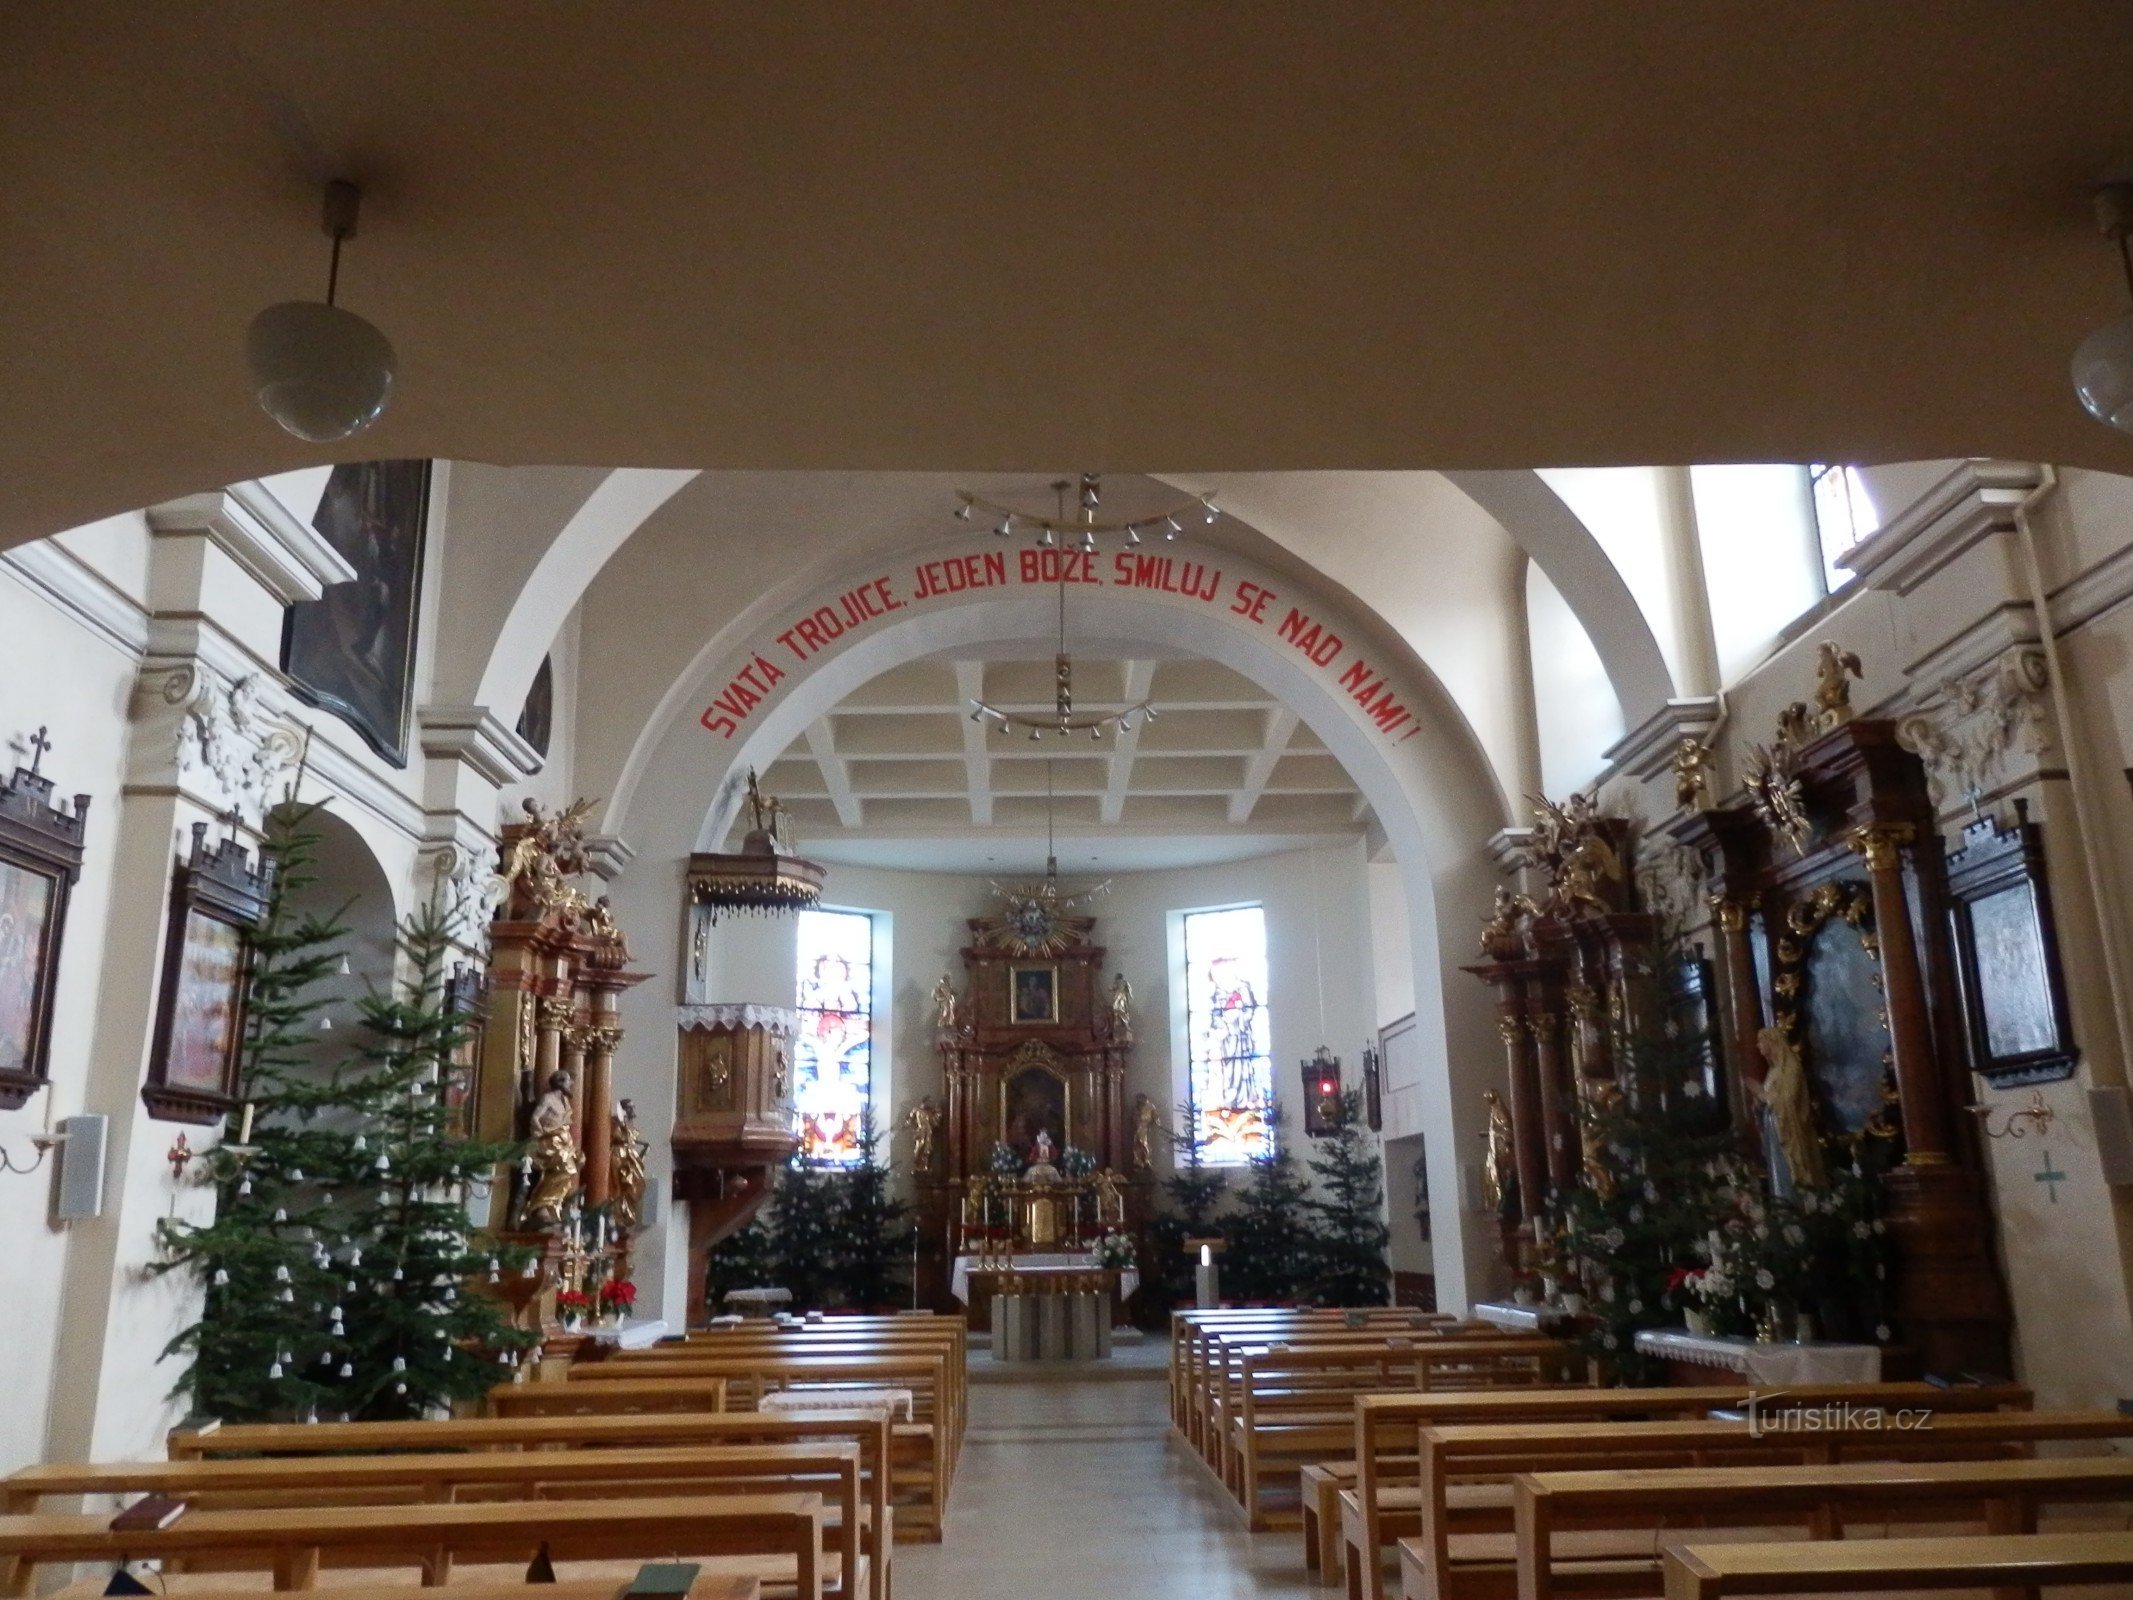 Kościół Świętej Trójcy w Střelice